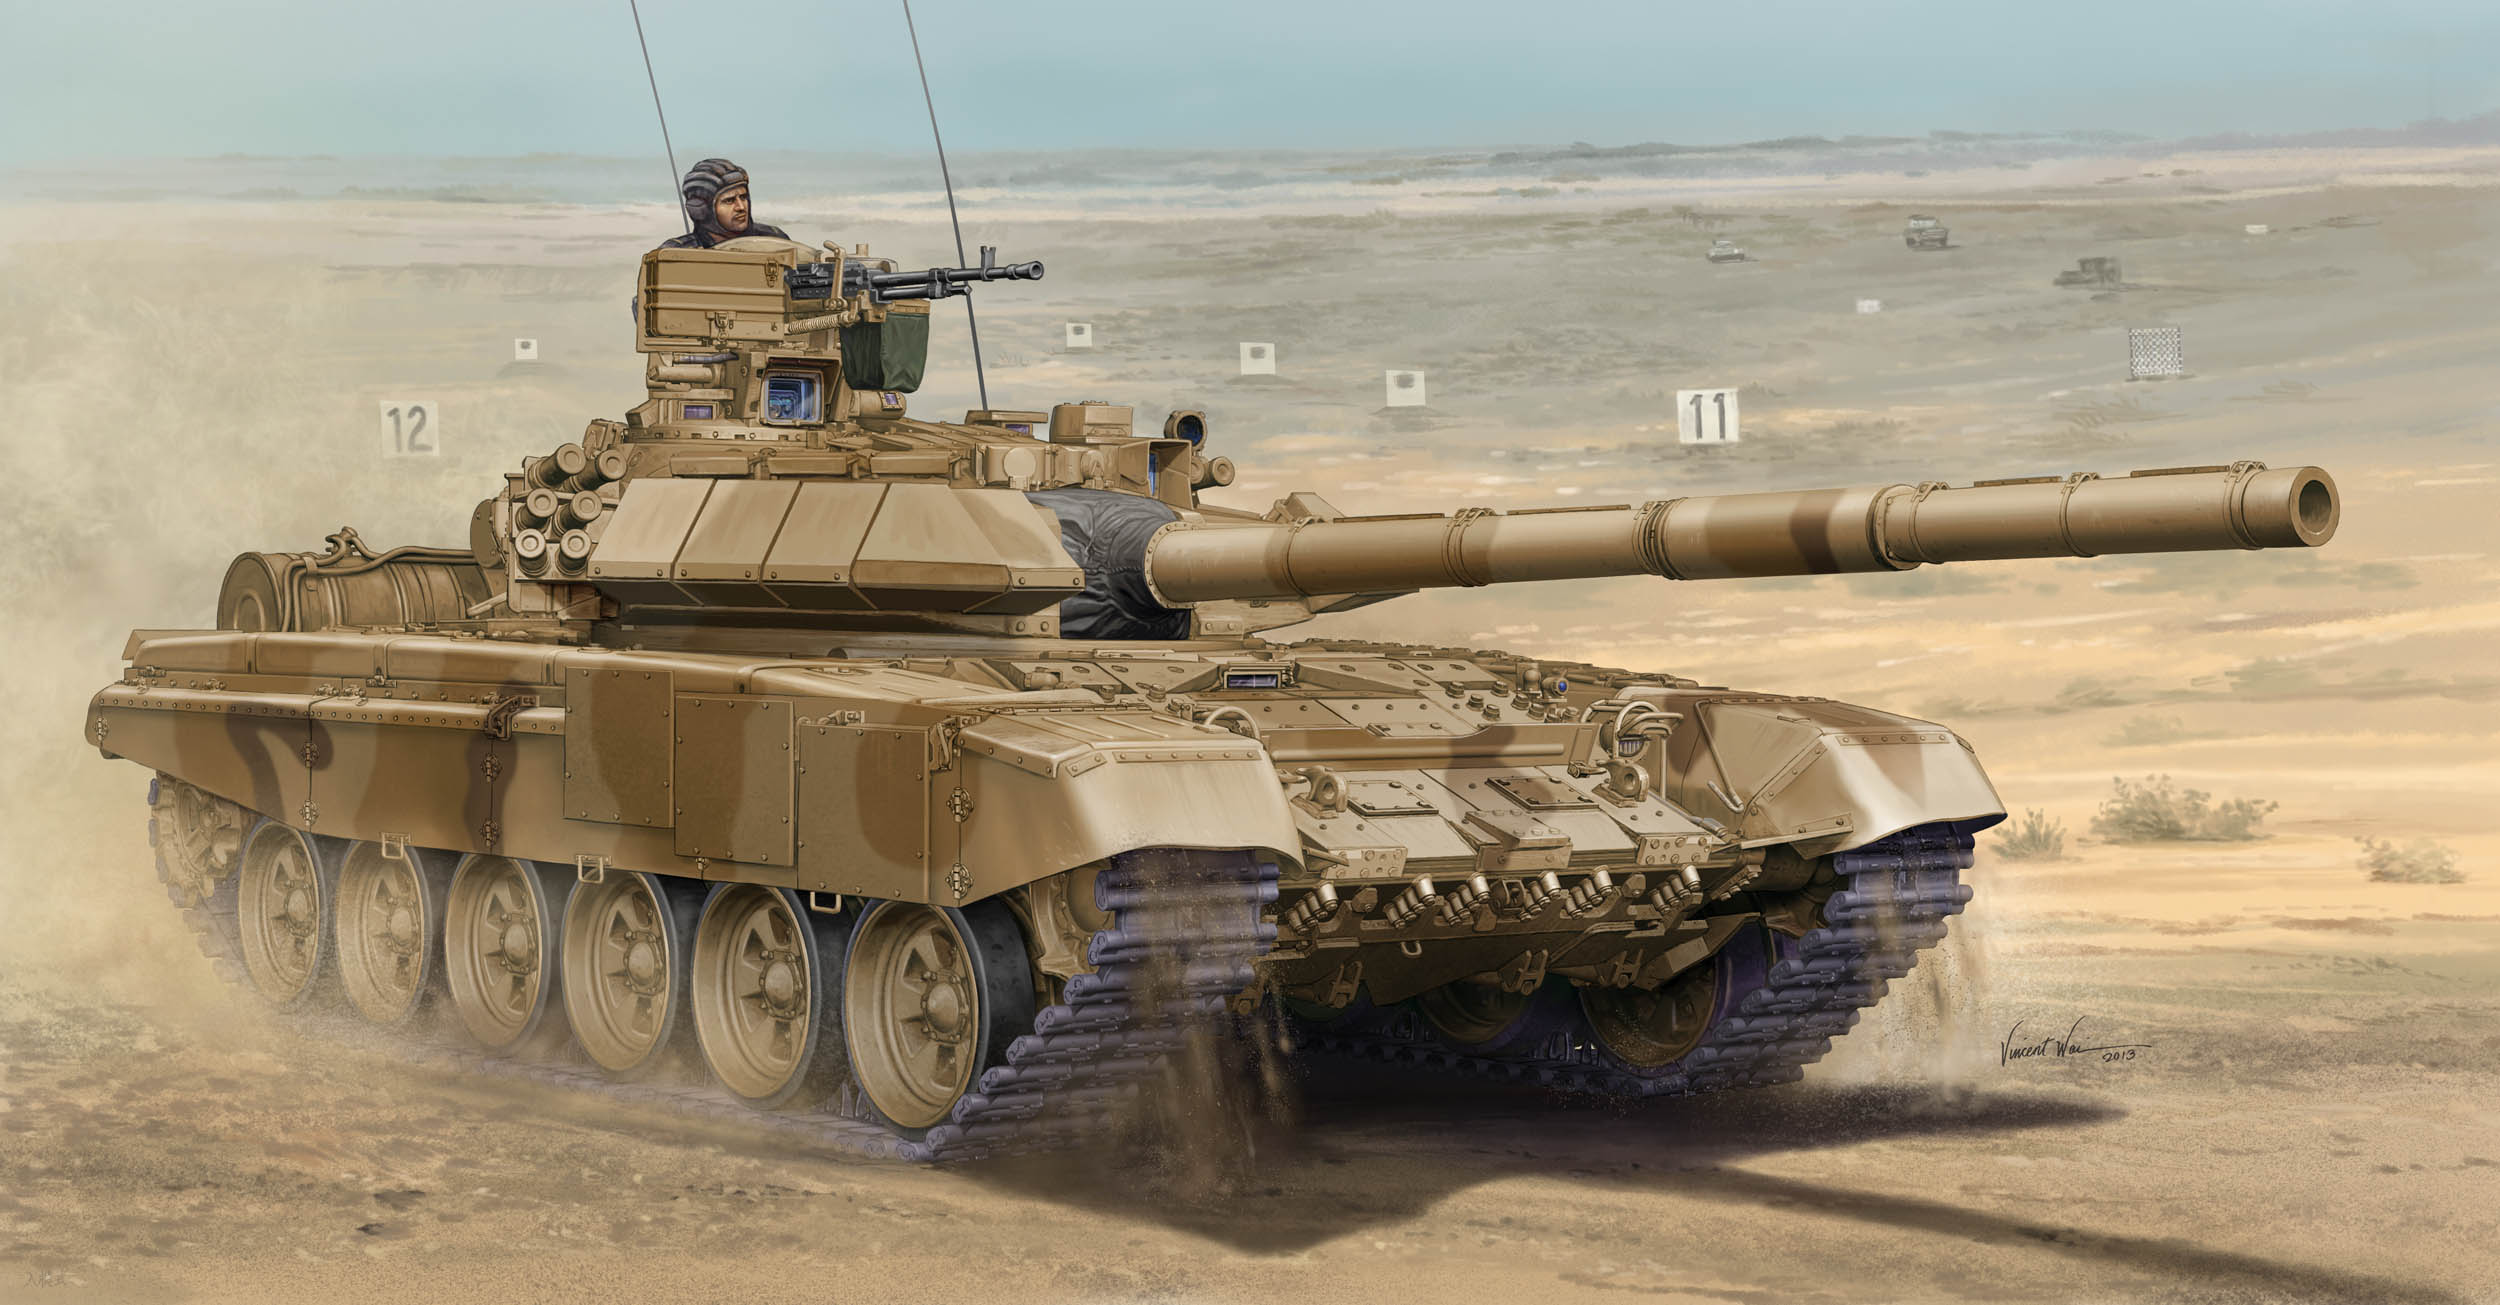 トランペッターモデル 1/35 ロシア連邦軍 T-90Ｃ 主力戦車 “鋳造砲塔 ...